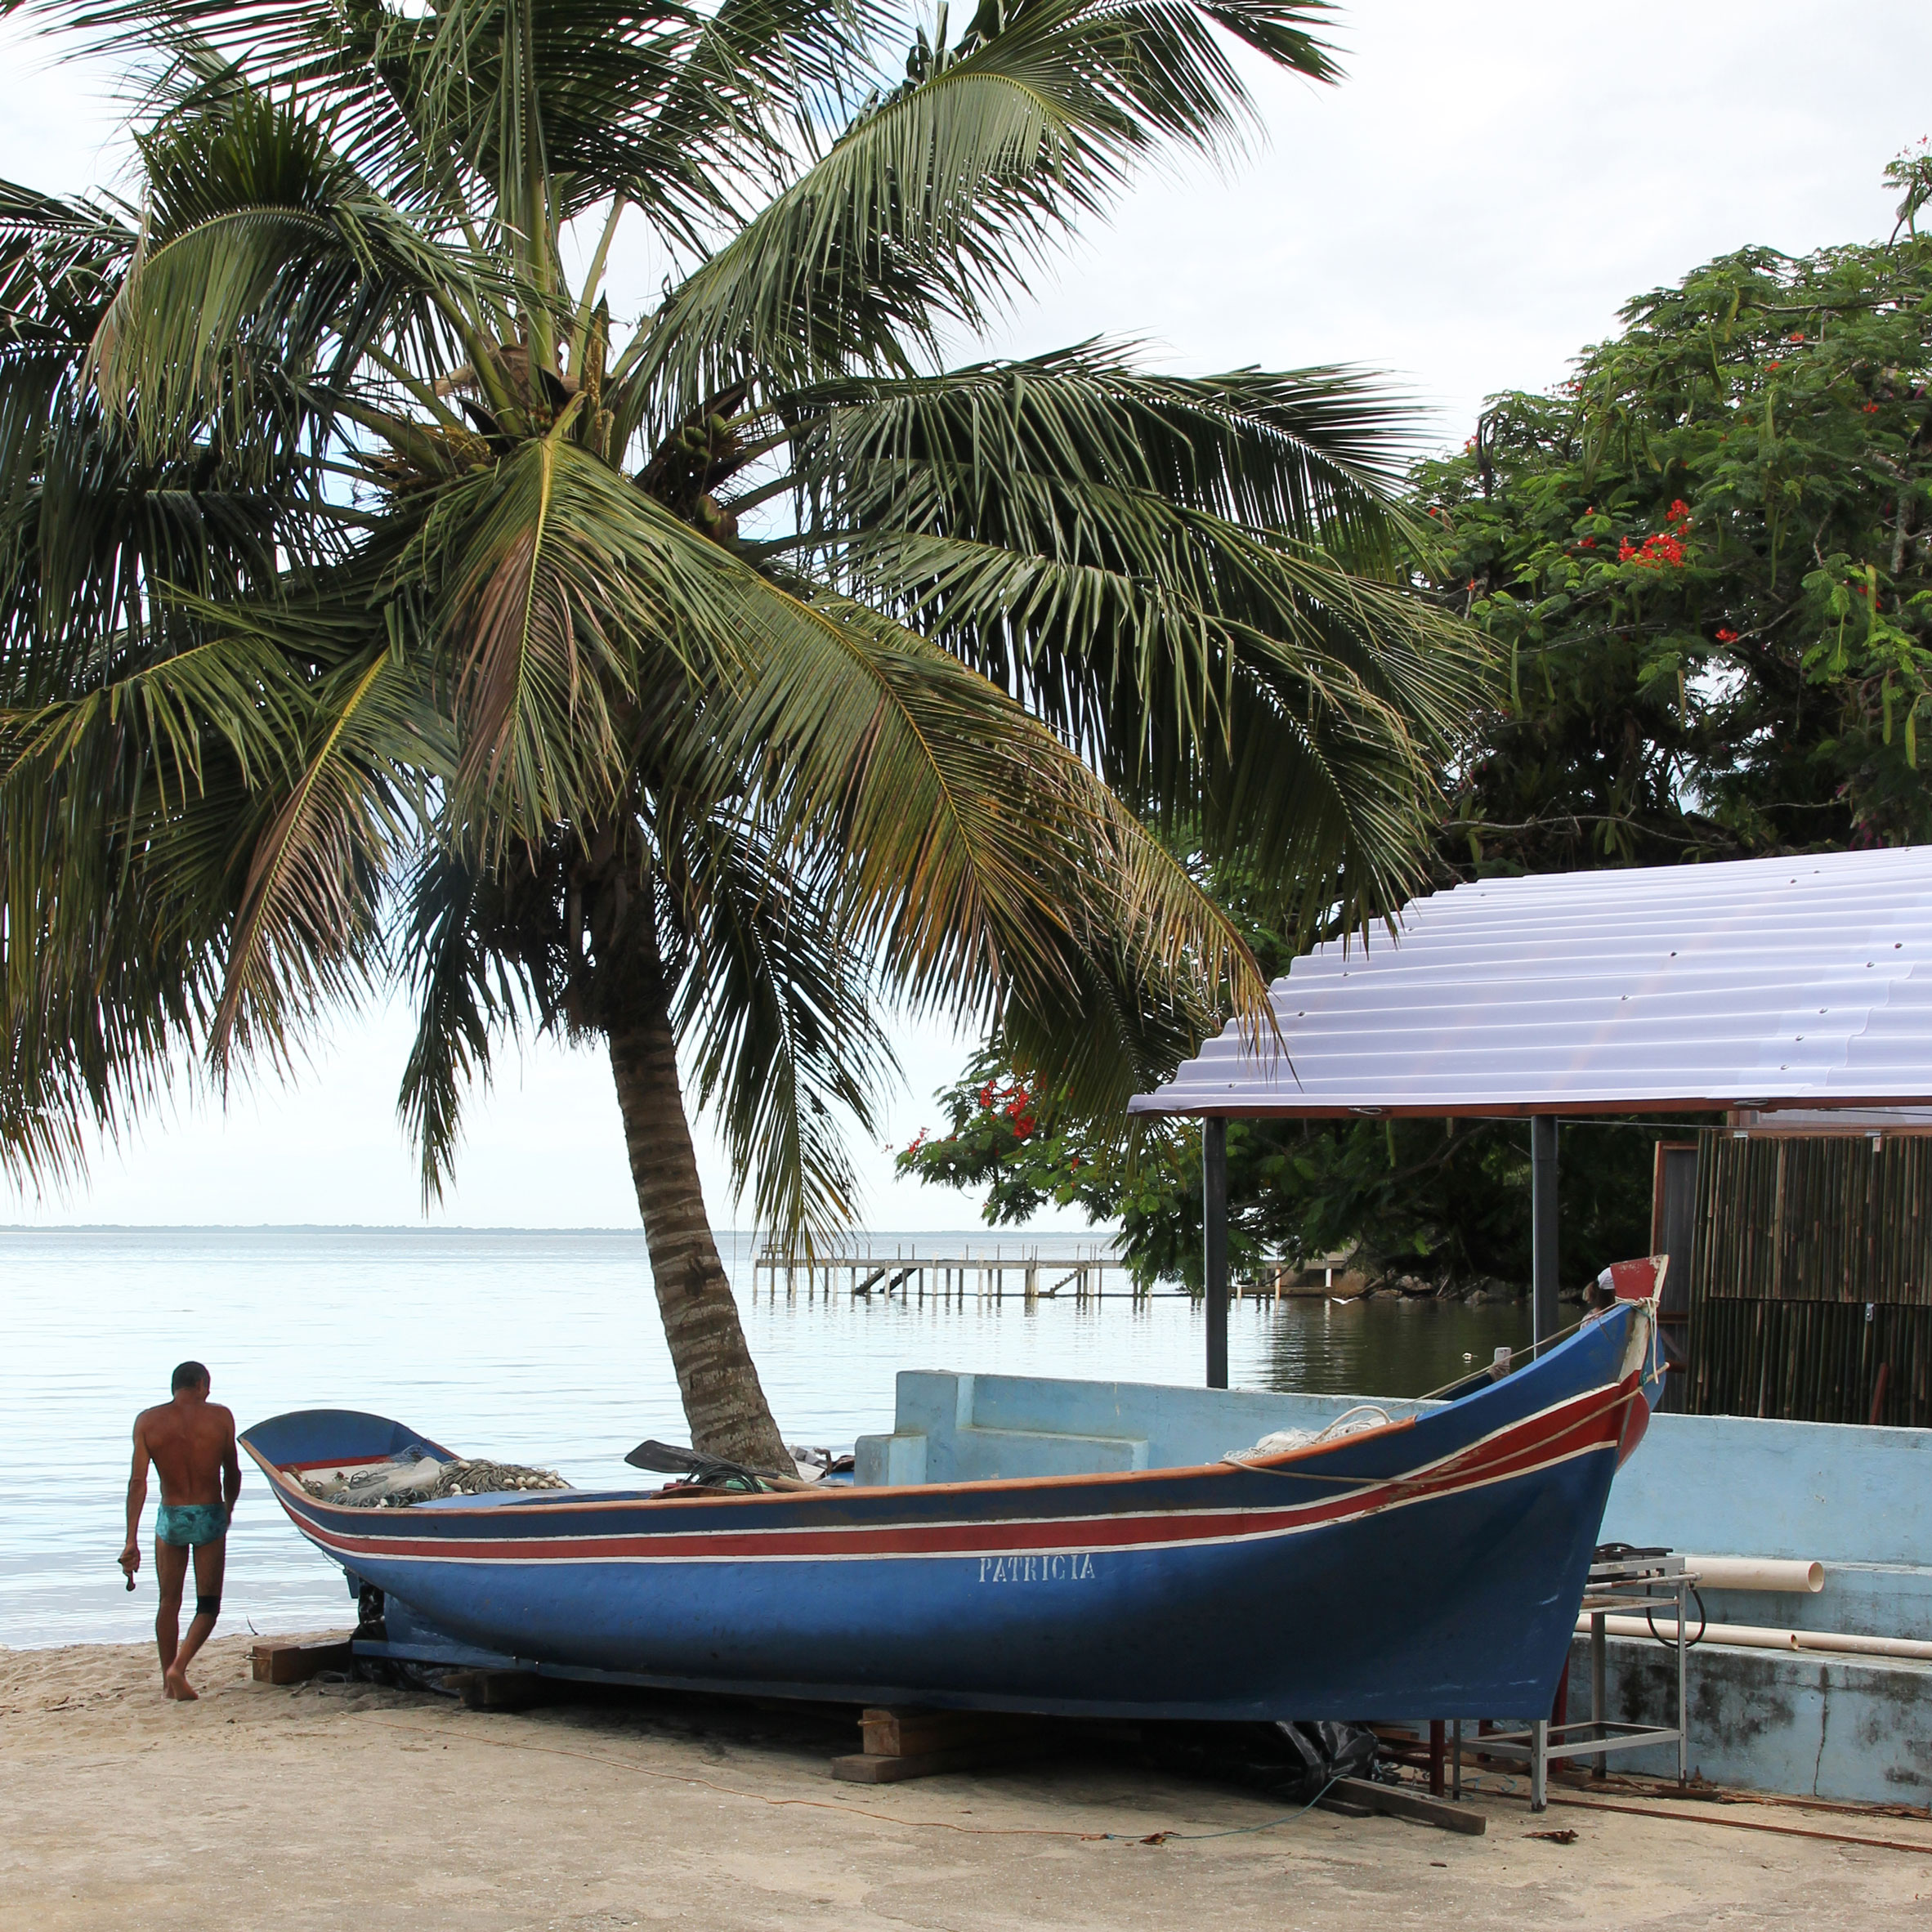 Beach Kiosk and Boat Refuge by Estudio Flume